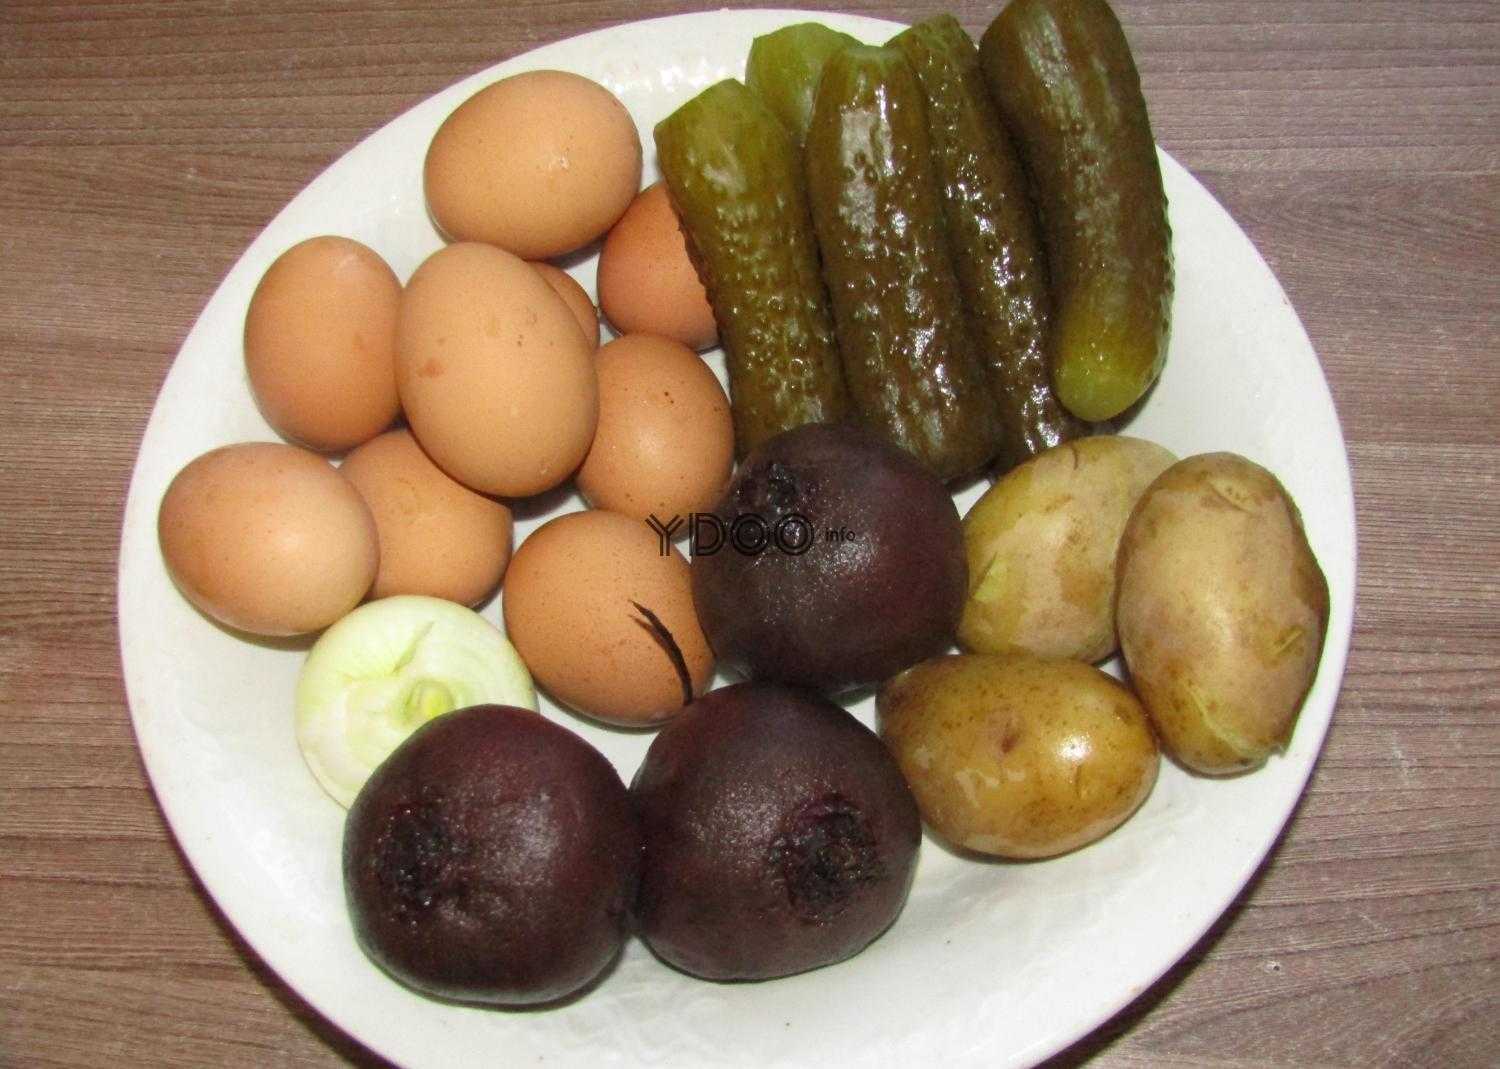 три вареных свеклы, три вареных картофелины, один репчатый лук, яйца куриные, соленые огурцы на белой круглой тарелке